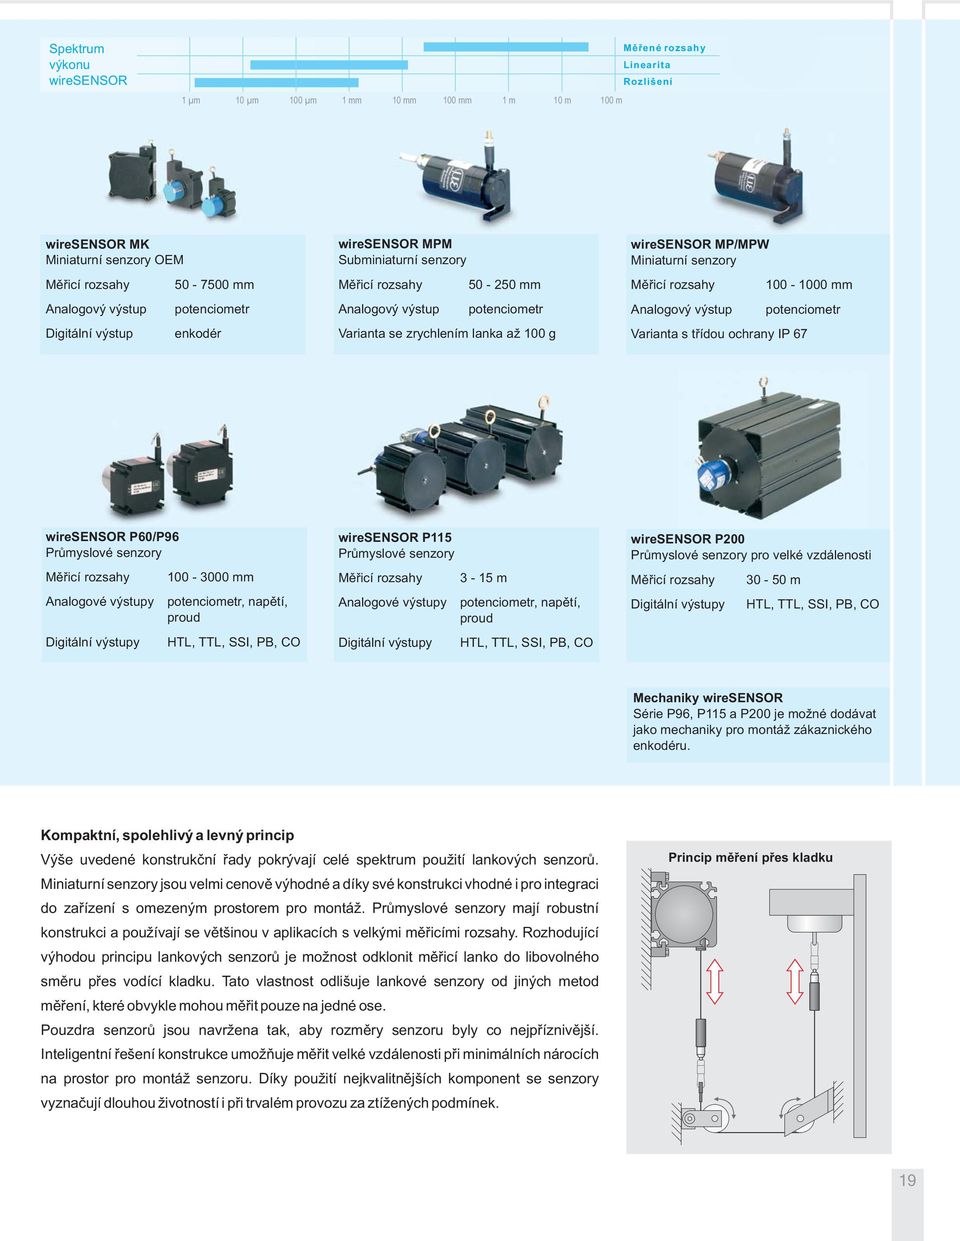 senzory Měřicí rozsahy 100-1000 mm Analogový výstup potenciometr Varianta s třídou ochrany IP 67 wiresensor P60/P96 Průmyslové senzory Měřicí rozsahy 100-3000 mm Analogové výstupy potenciometr,